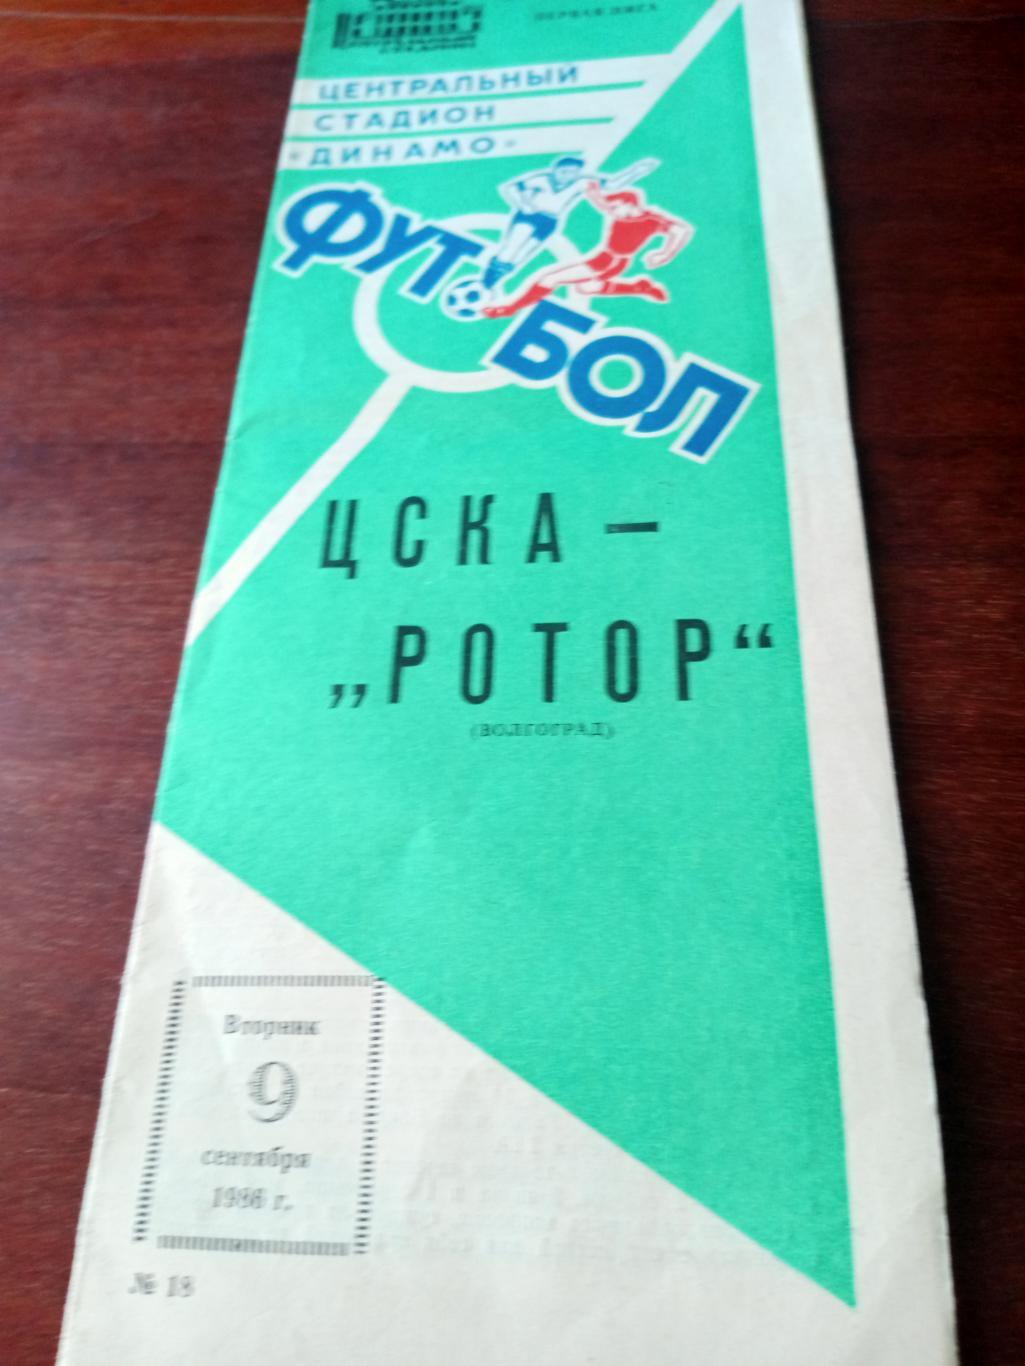 ЦСКА - Ротор. 9 сентября 1986 год